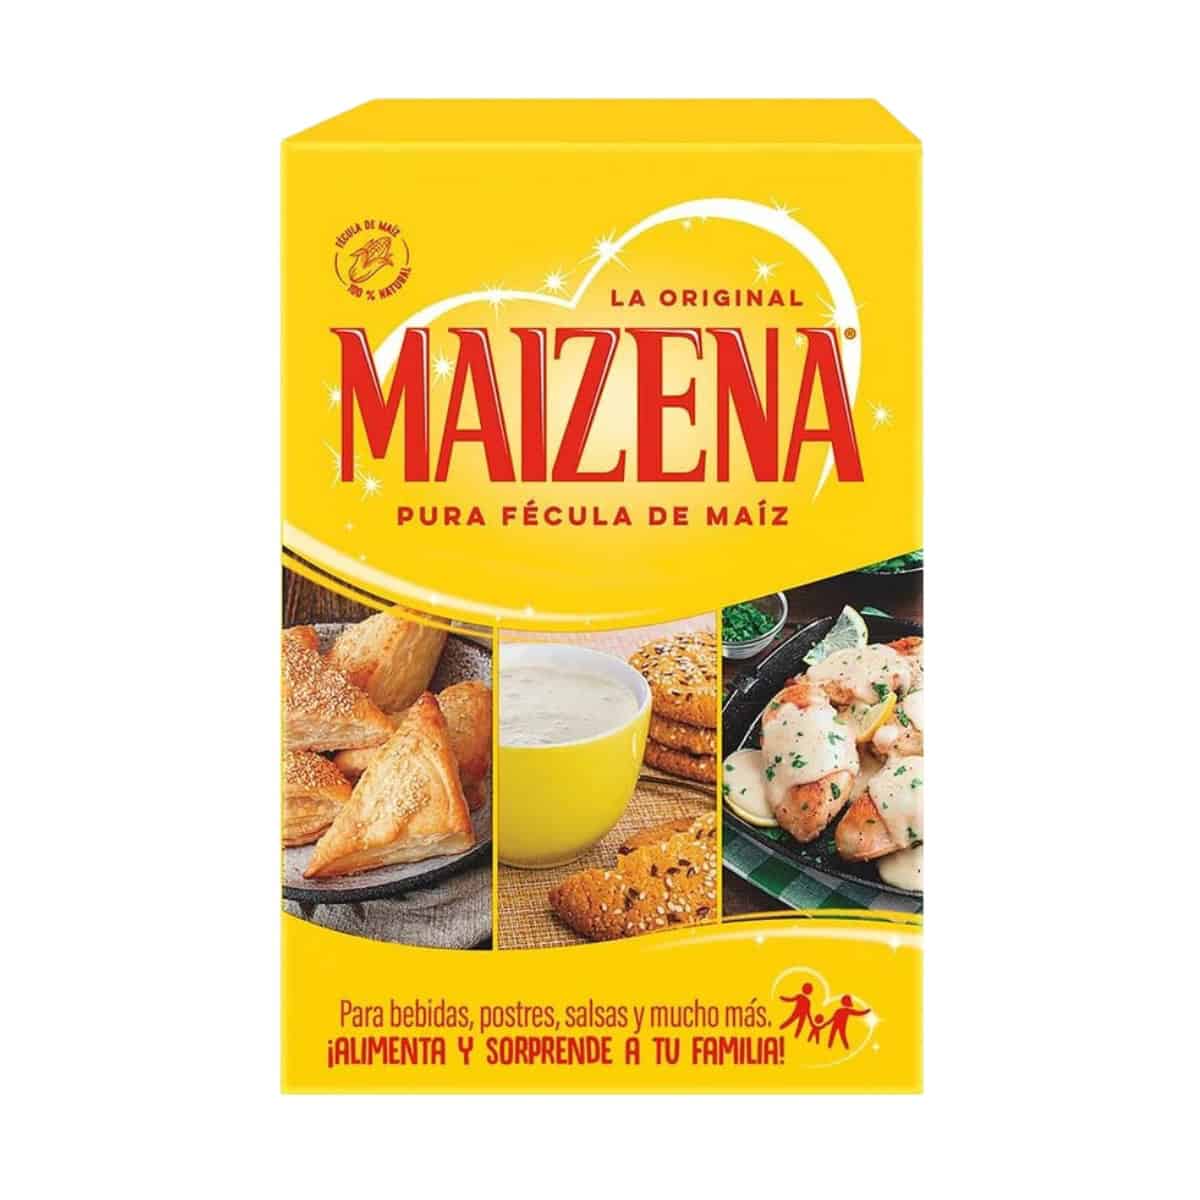 Buy Maizena Pura Fecula De Maiz (Corn Flour) - 380 gm